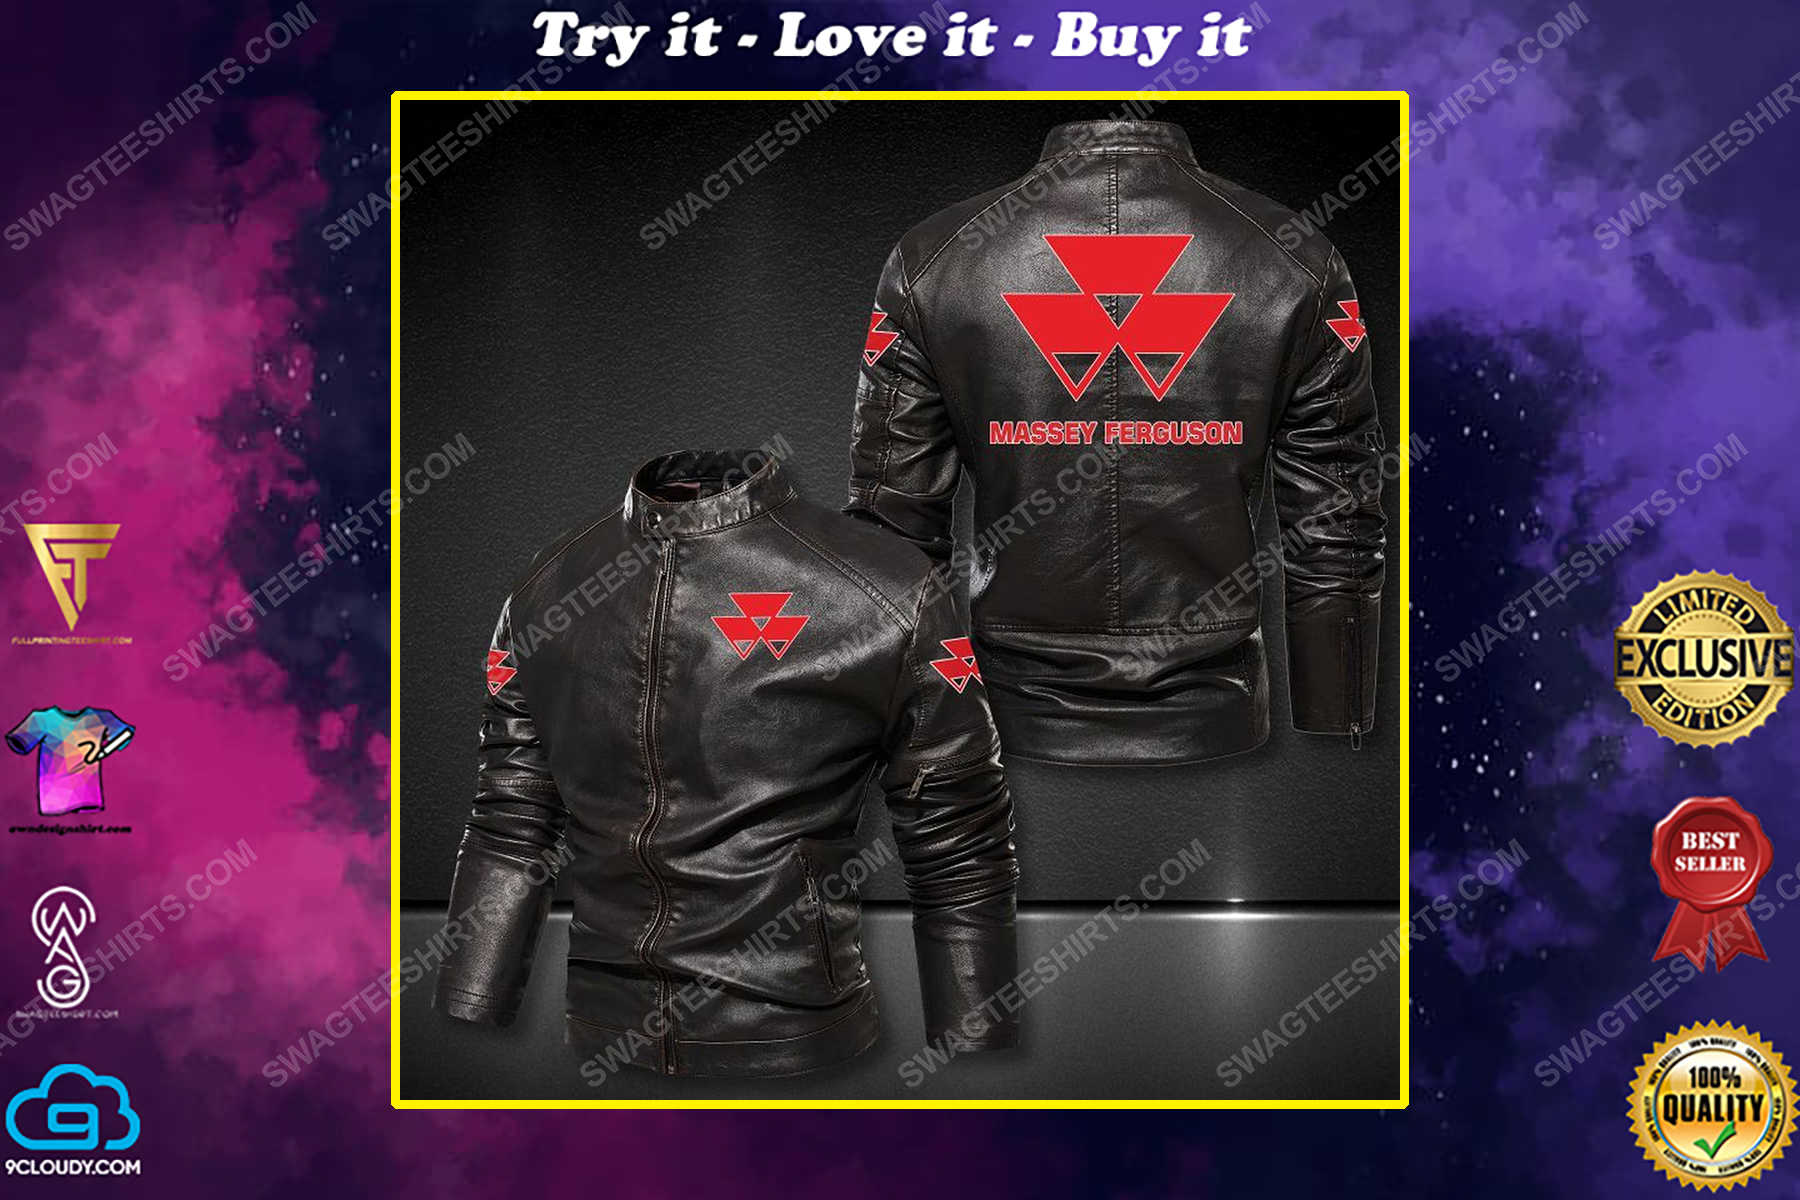 Massey ferguson limited company leather jacket